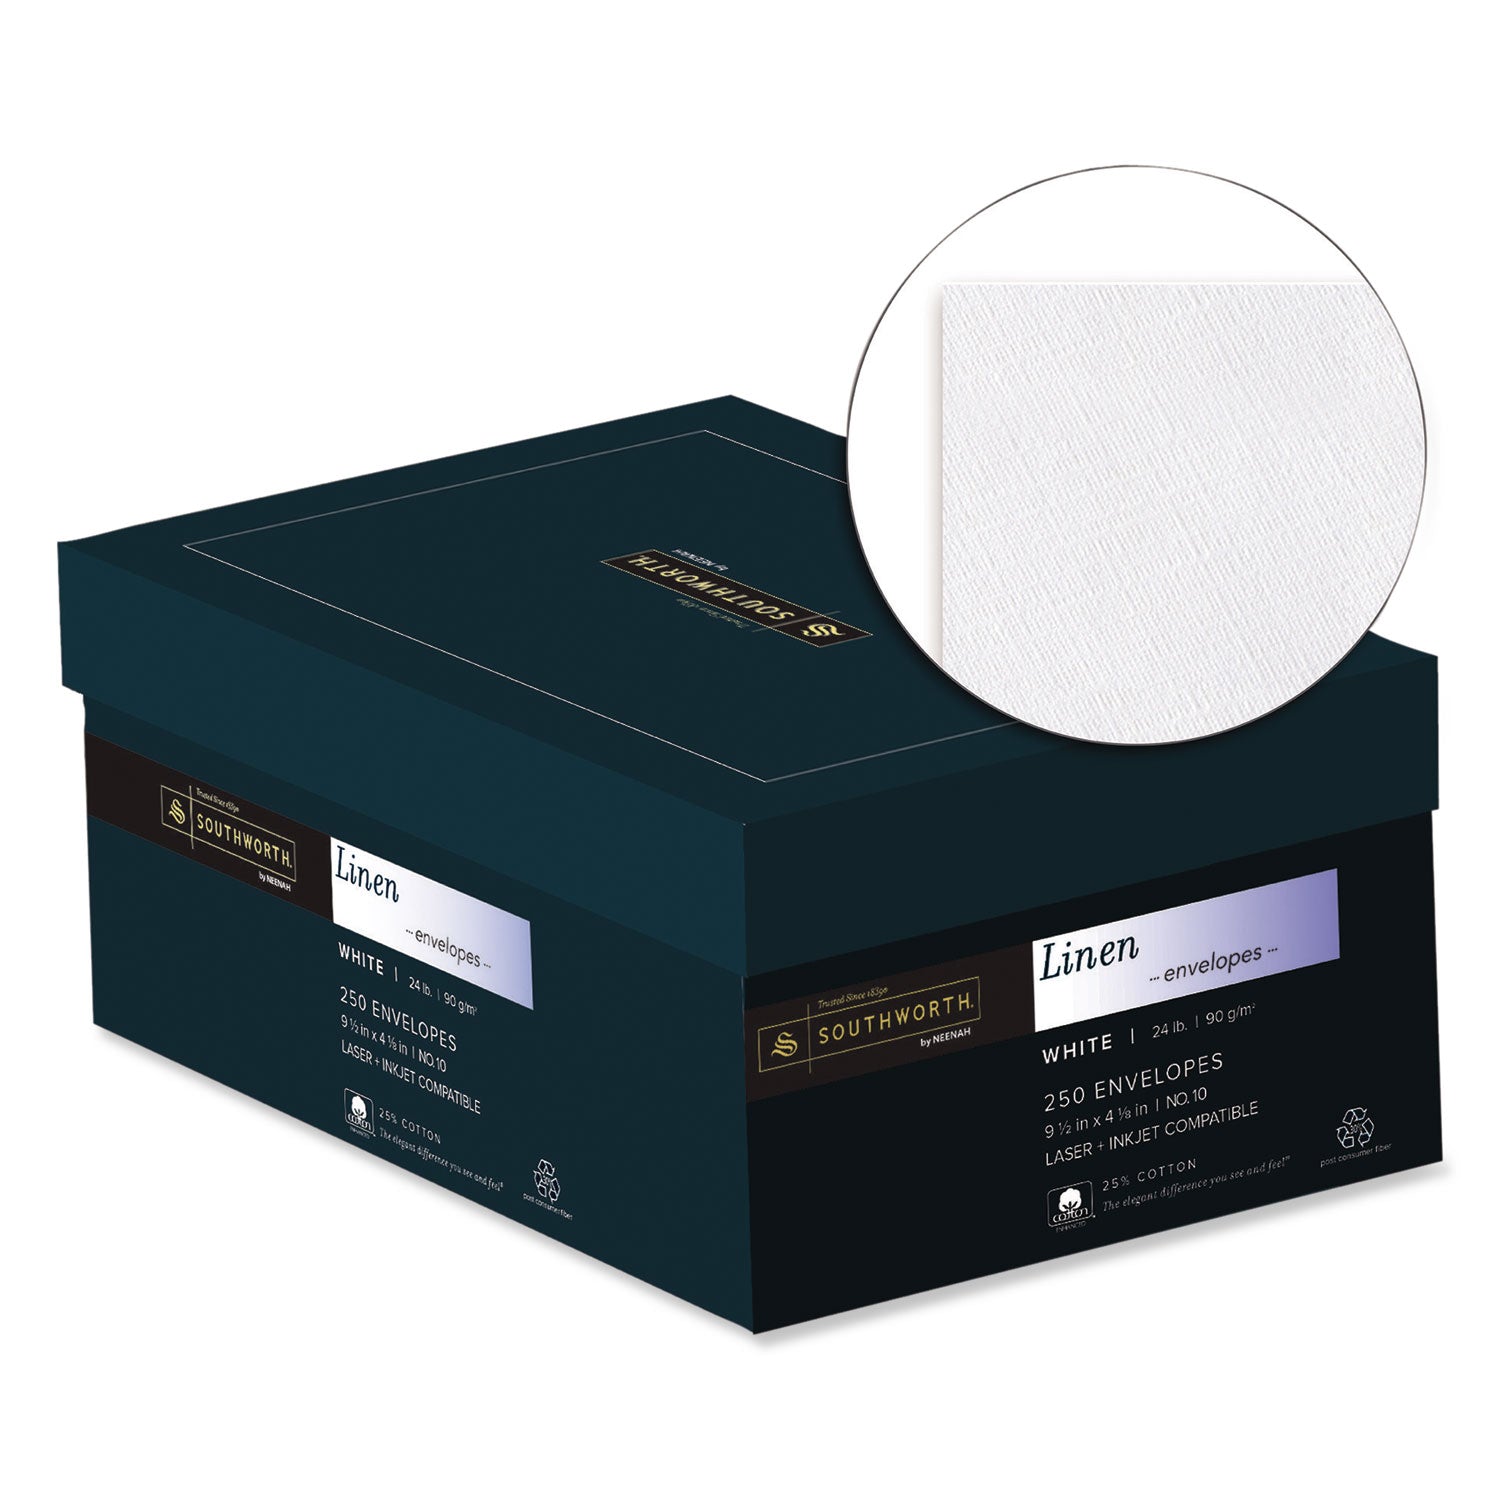 25% Cotton Linen #10 Envelope, Commercial Flap, Gummed Closure, 4.13 x 9.5, White, 250/Box - 